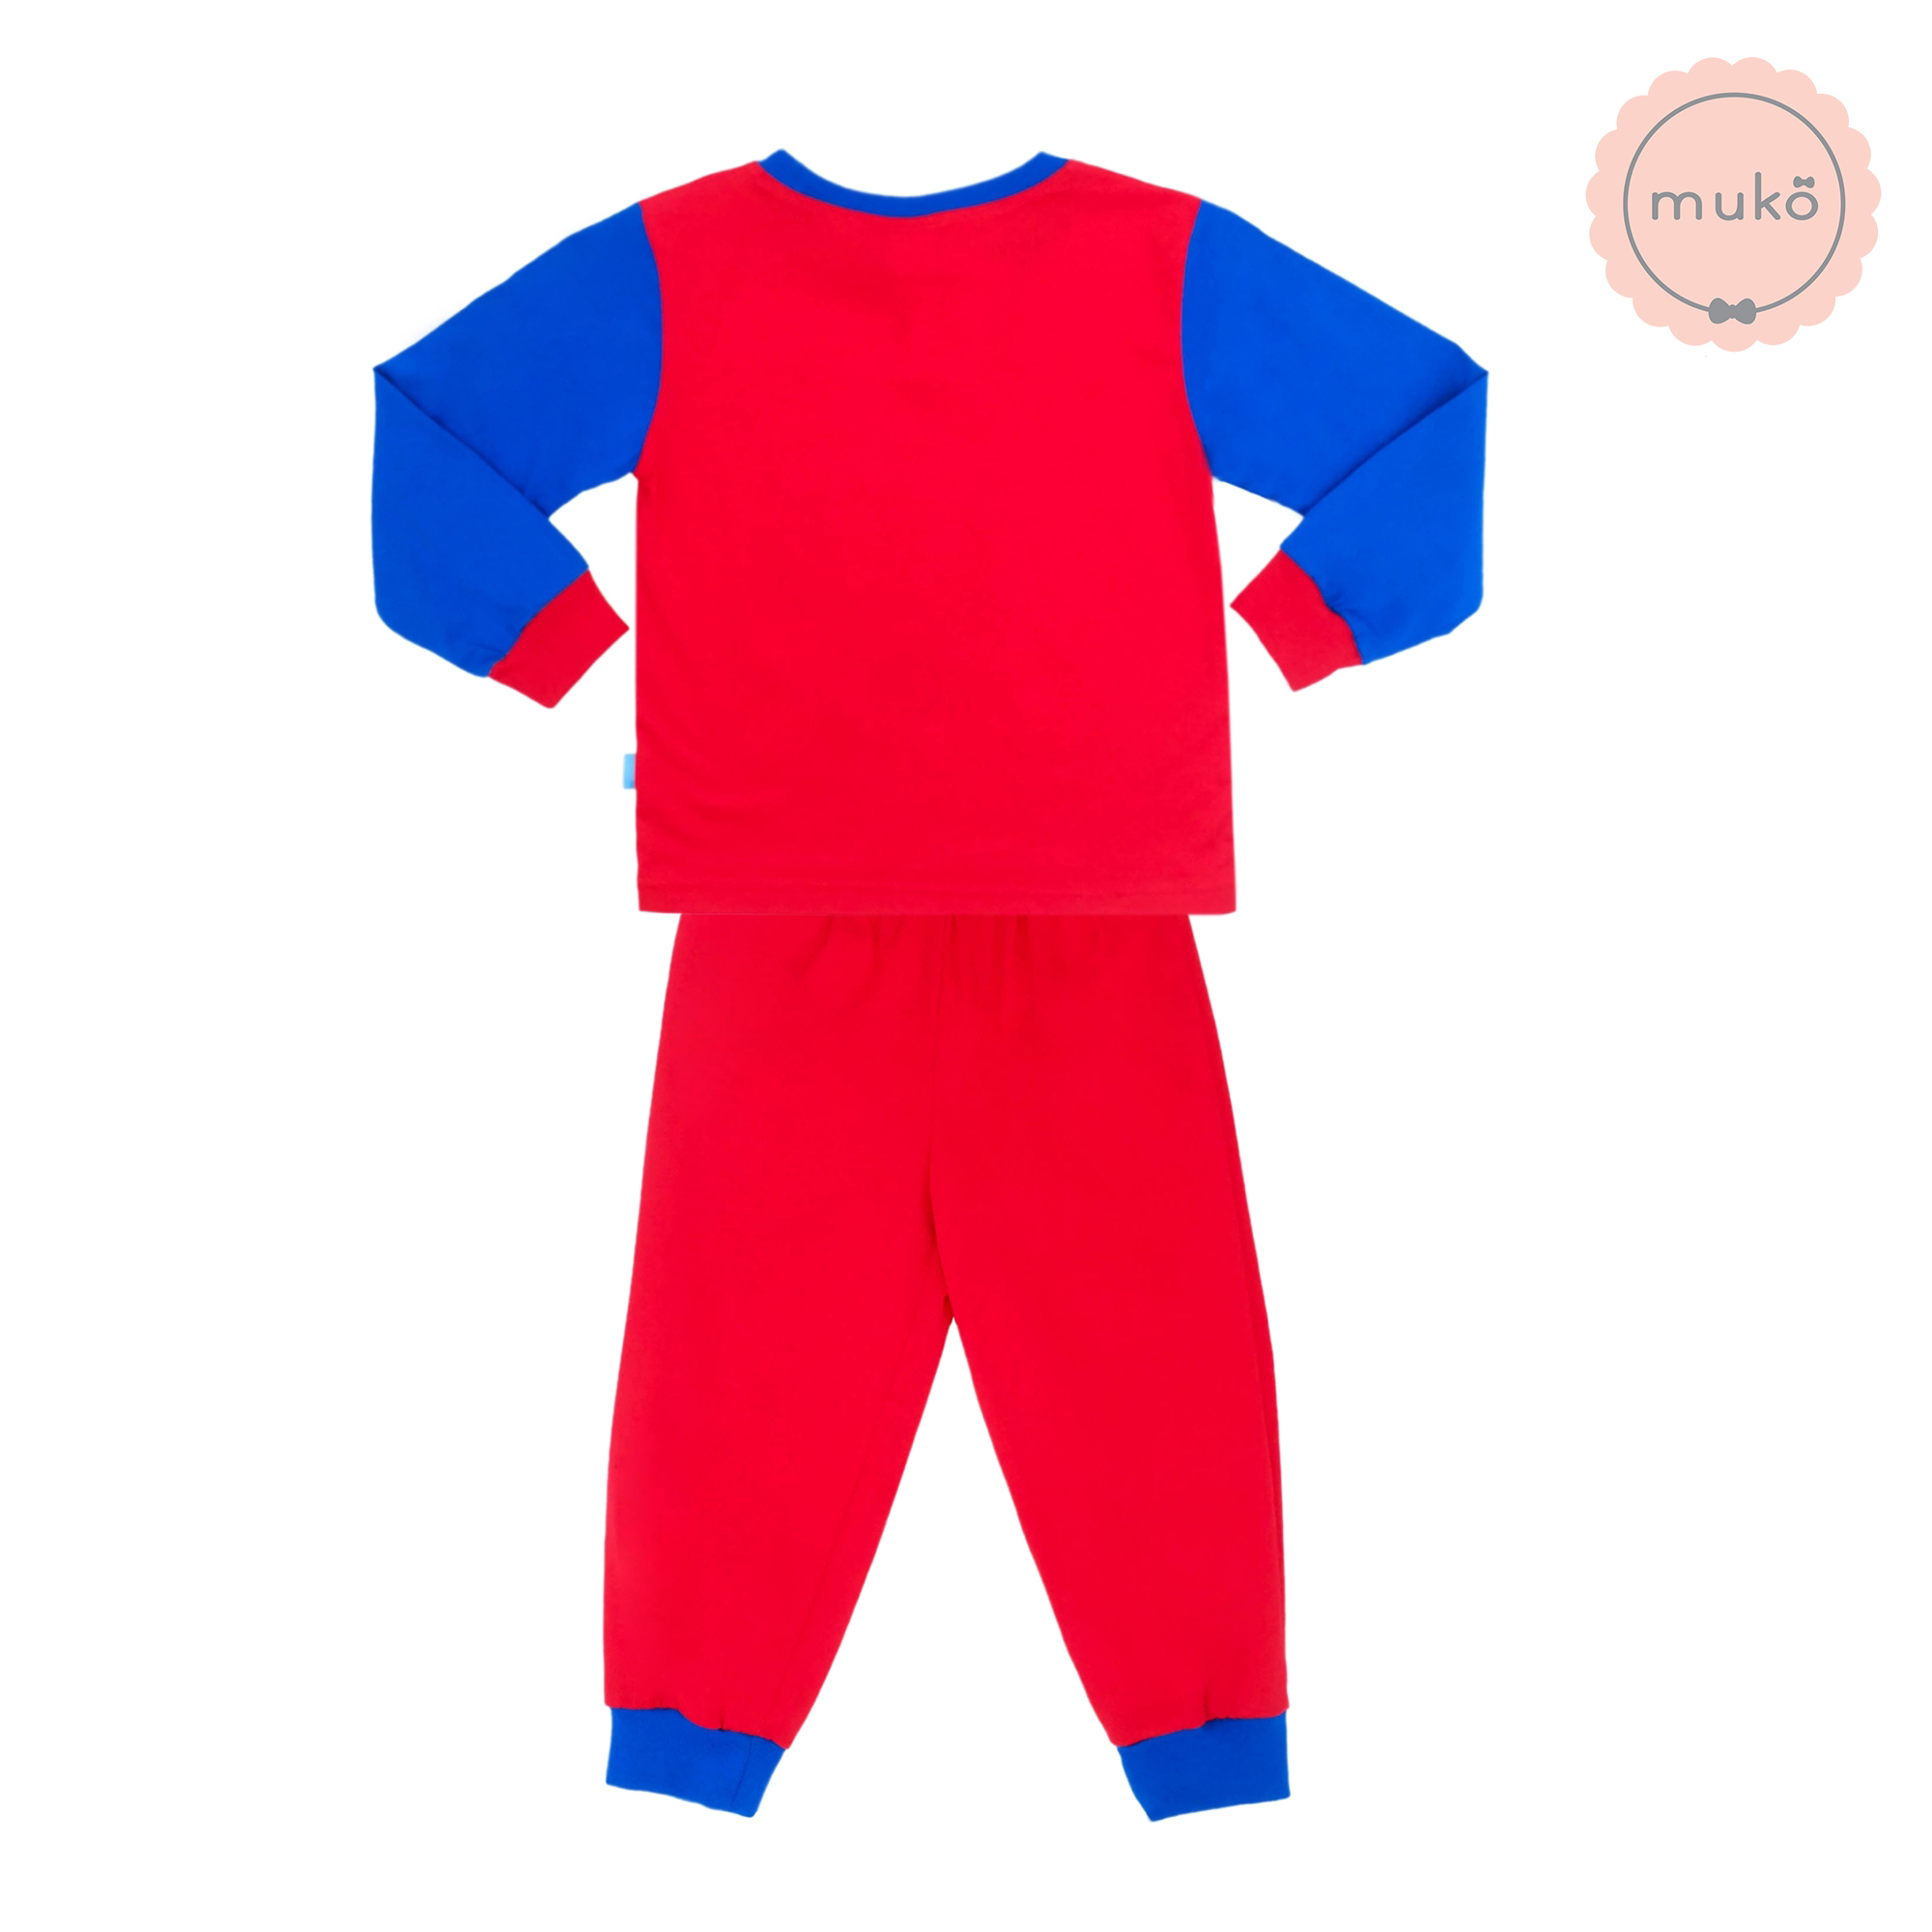 ชุดเด็ก 1-2 ขวบ แขนยาว-ขายาว (Size 2) DLS127-691-3-Red 2 ลาย สติช Stitch สีแดง (แขนน้ำเงินเข้ม)